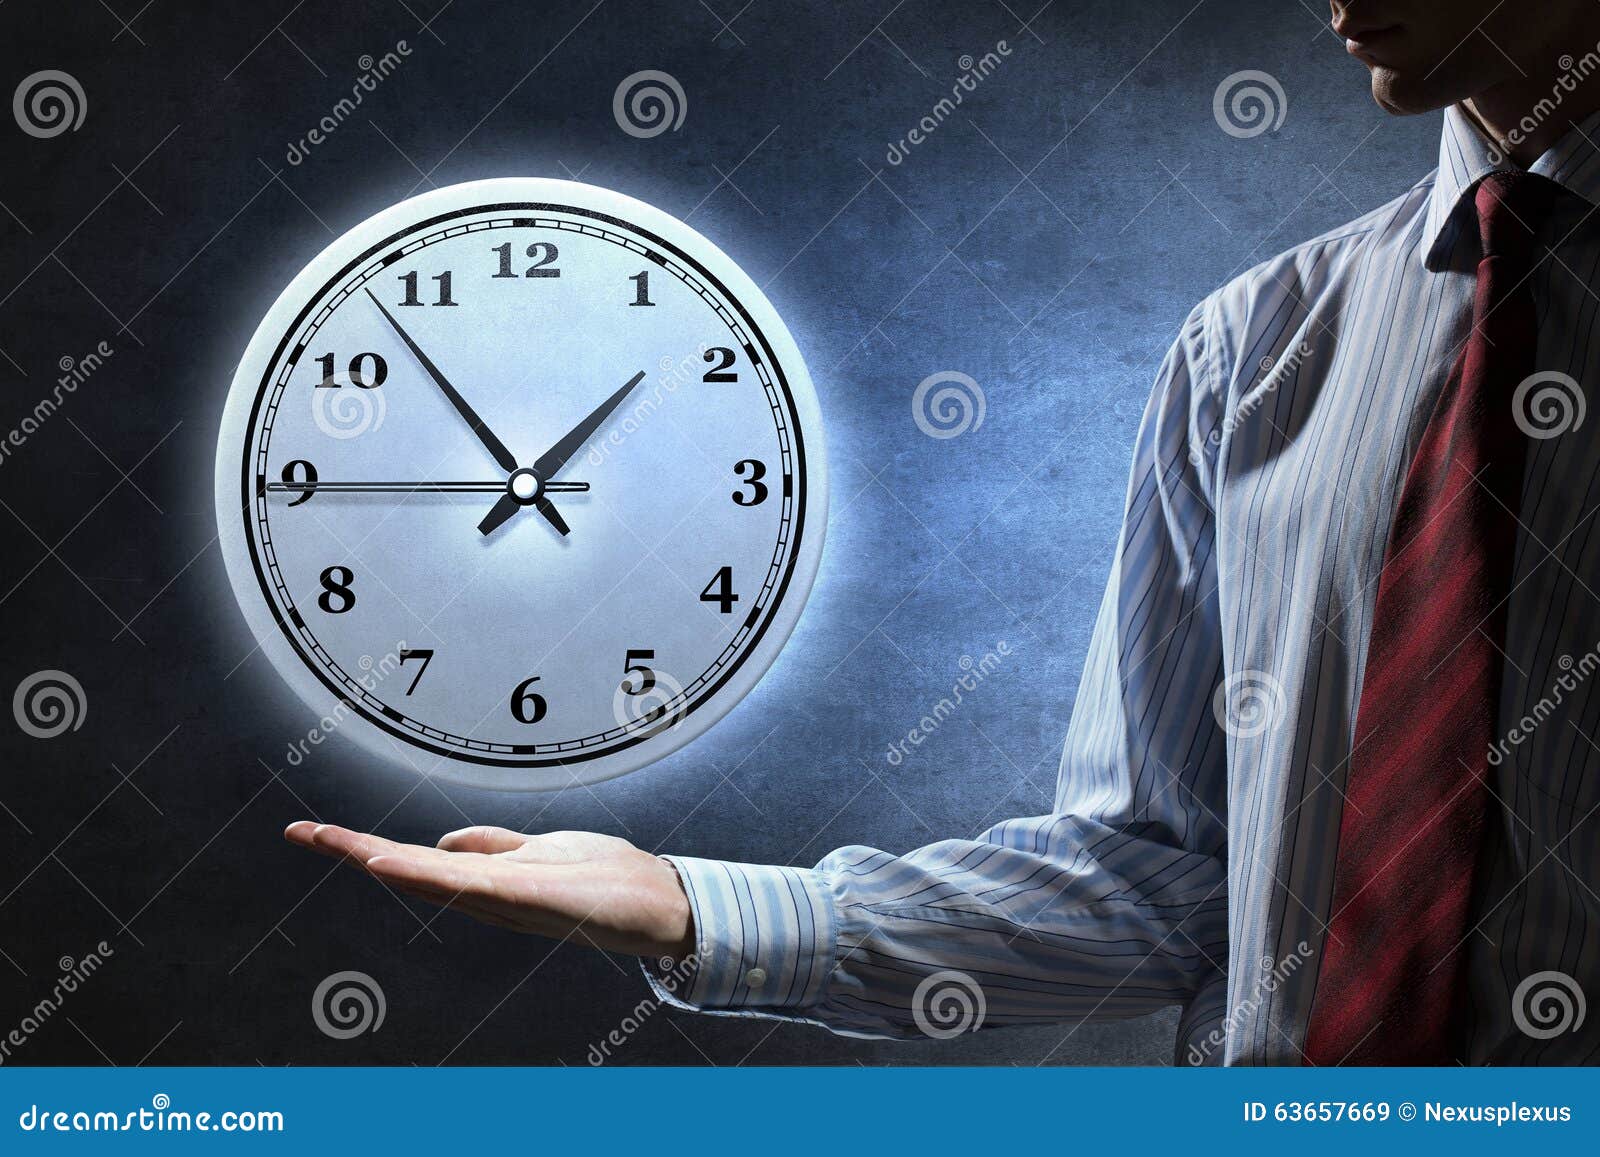 Ваше время и техника в. Человек часы. Часы и человек план. Управляющий временем арт. Спонтанный человек и часы час дня.